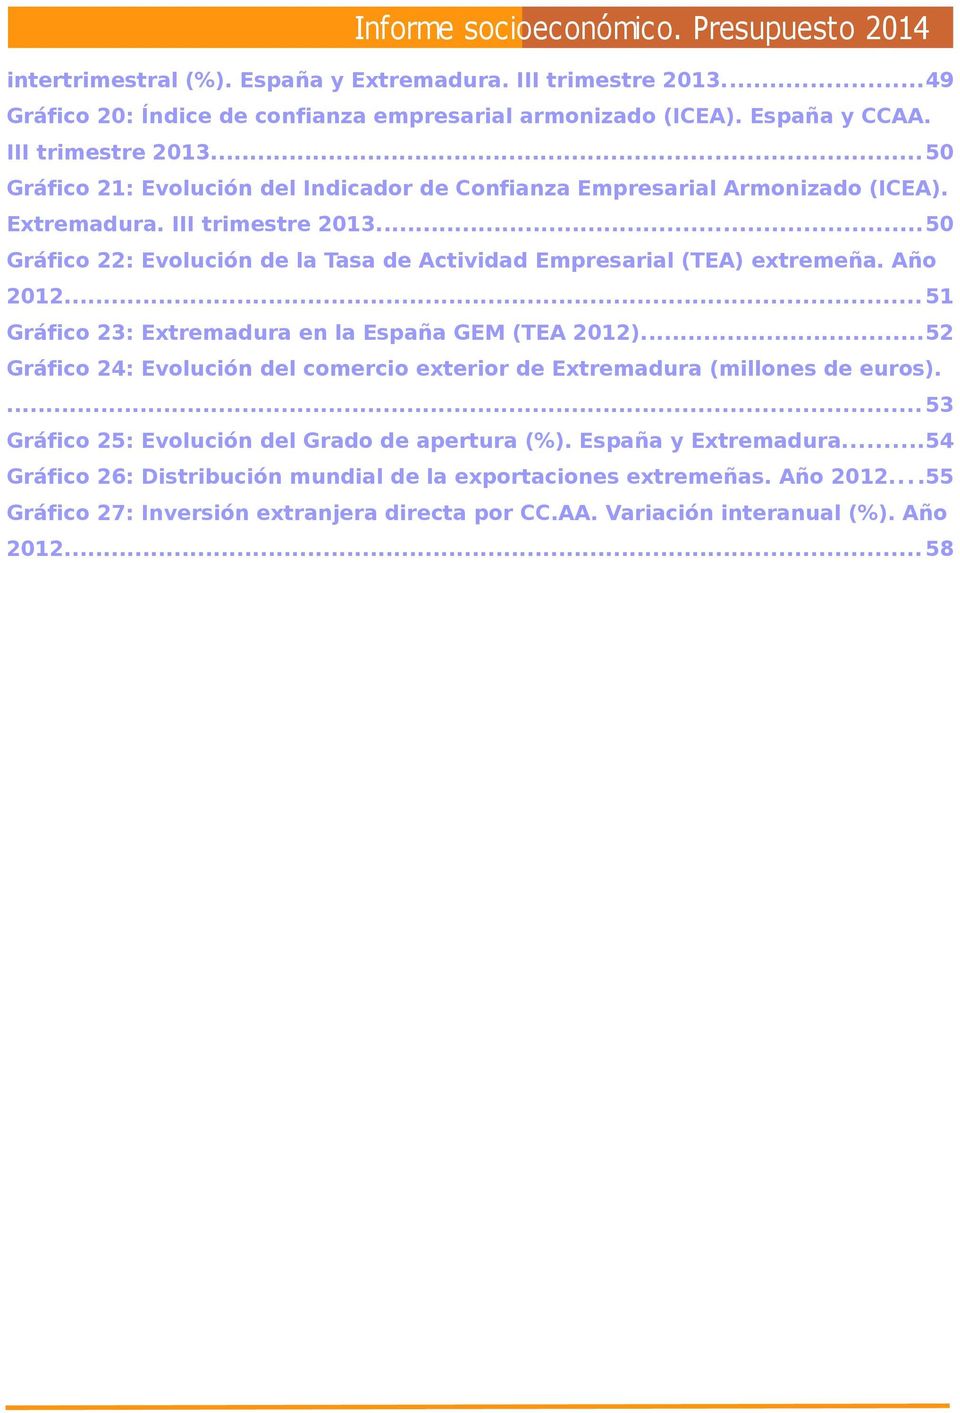 ..52 Gráfico 24: Evolución del comercio exterior de Extremadura (millones de euros).... 53 Gráfico 25: Evolución del Grado de apertura (%). España y Extremadura.